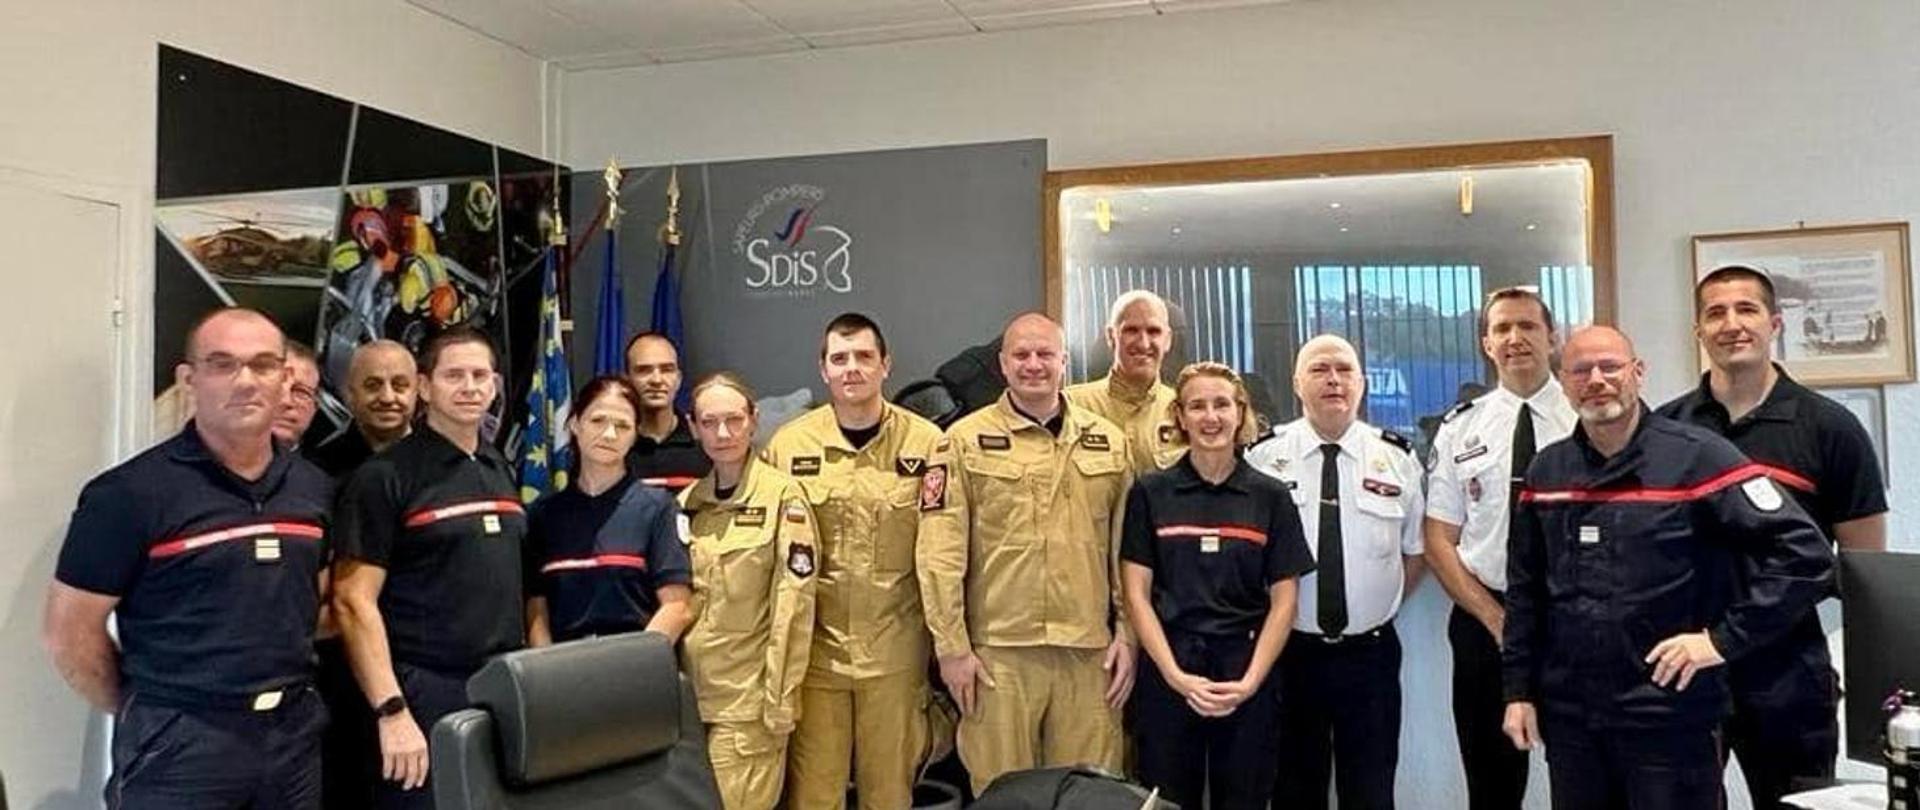 Grupa strażaków polskich i francuskich w mundurach stoi w biurze , na drzwiach napis SDiS